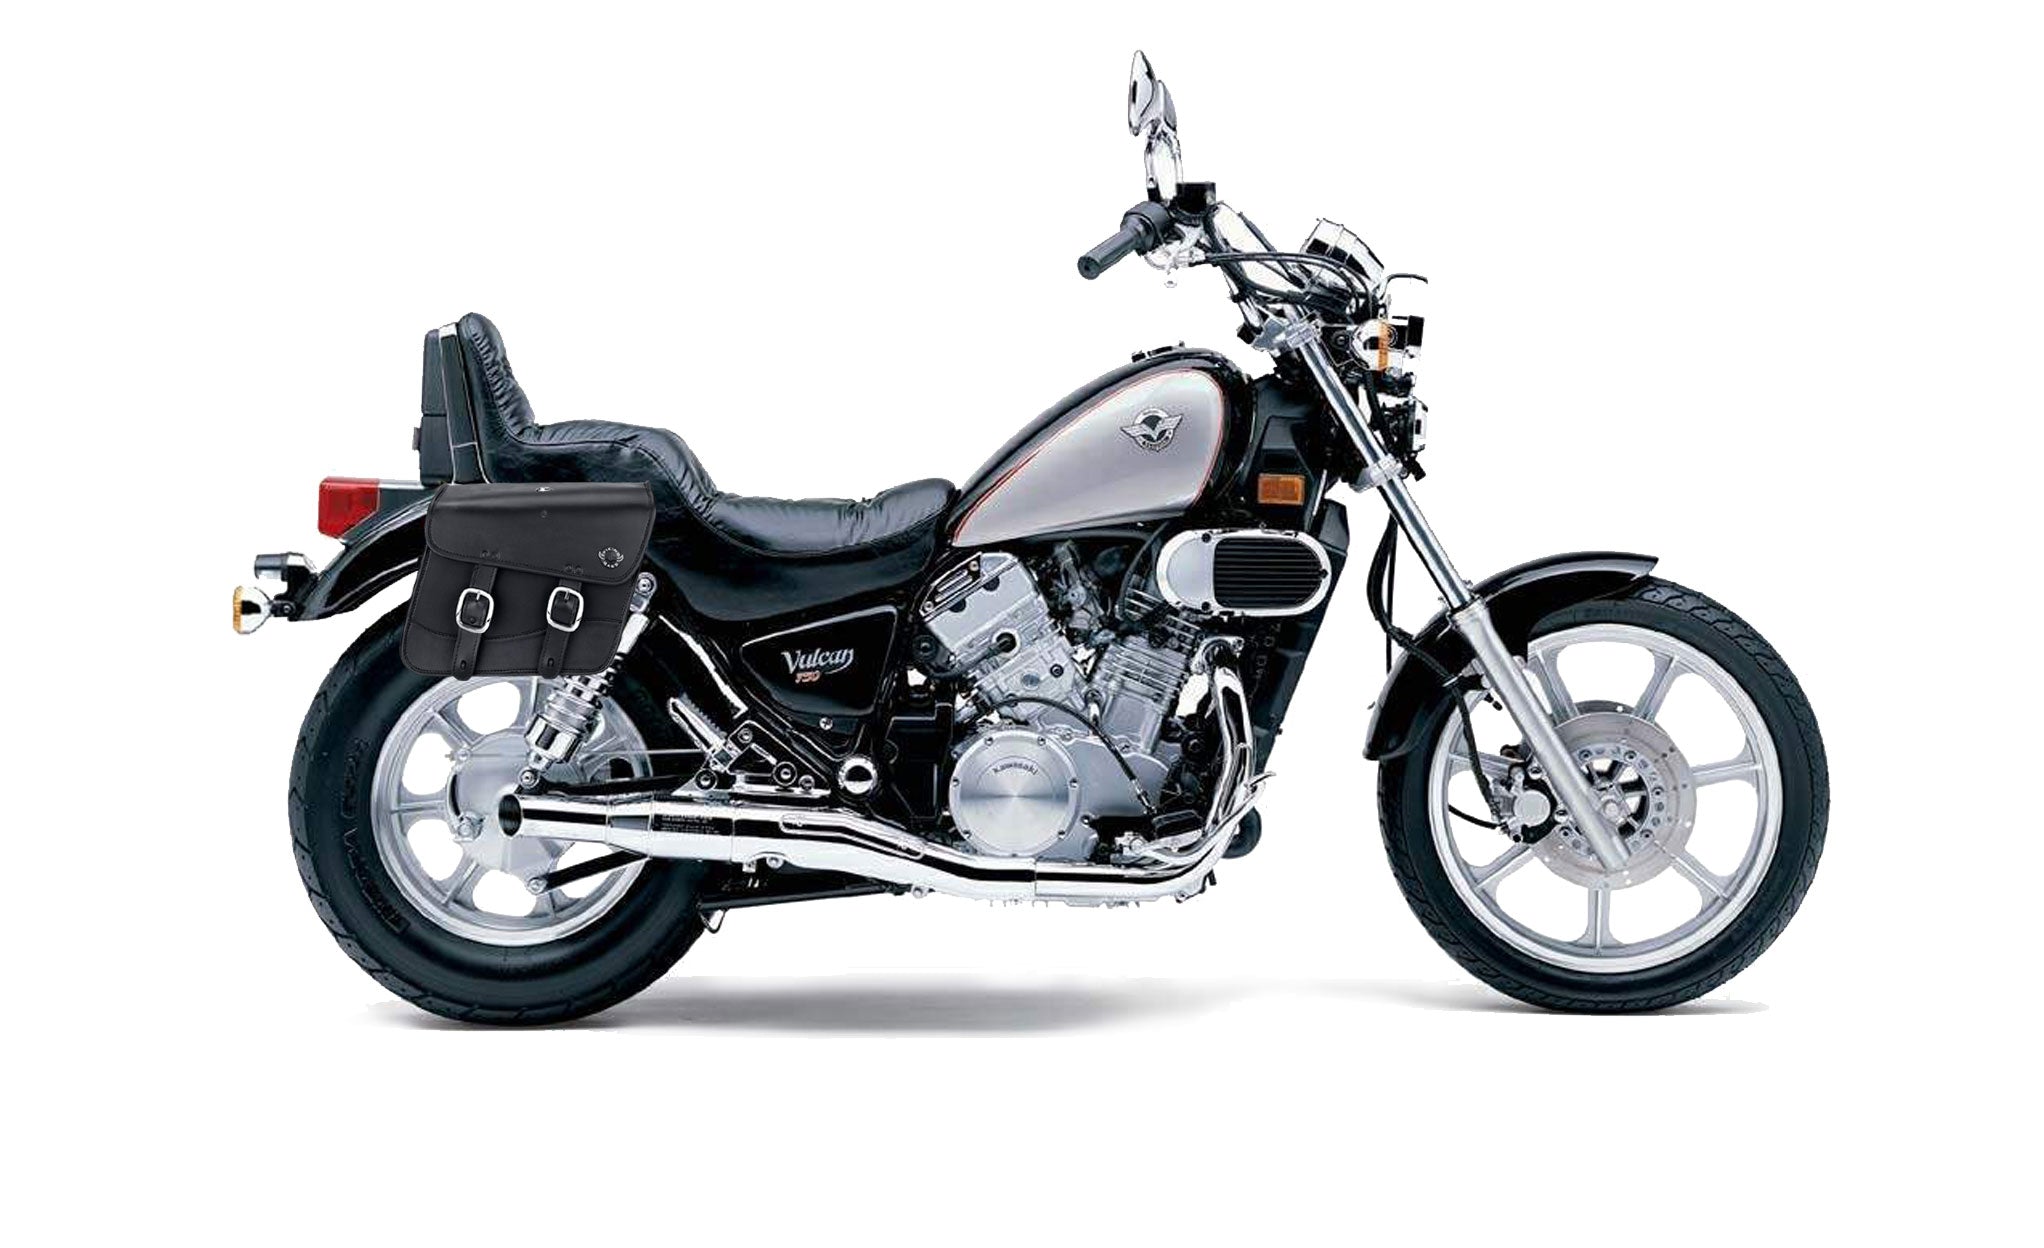 Viking Thor Medium Kawasaki Vulcan 750 Vn750 Leather Motorcycle Saddlebags on Bike Photo @expand